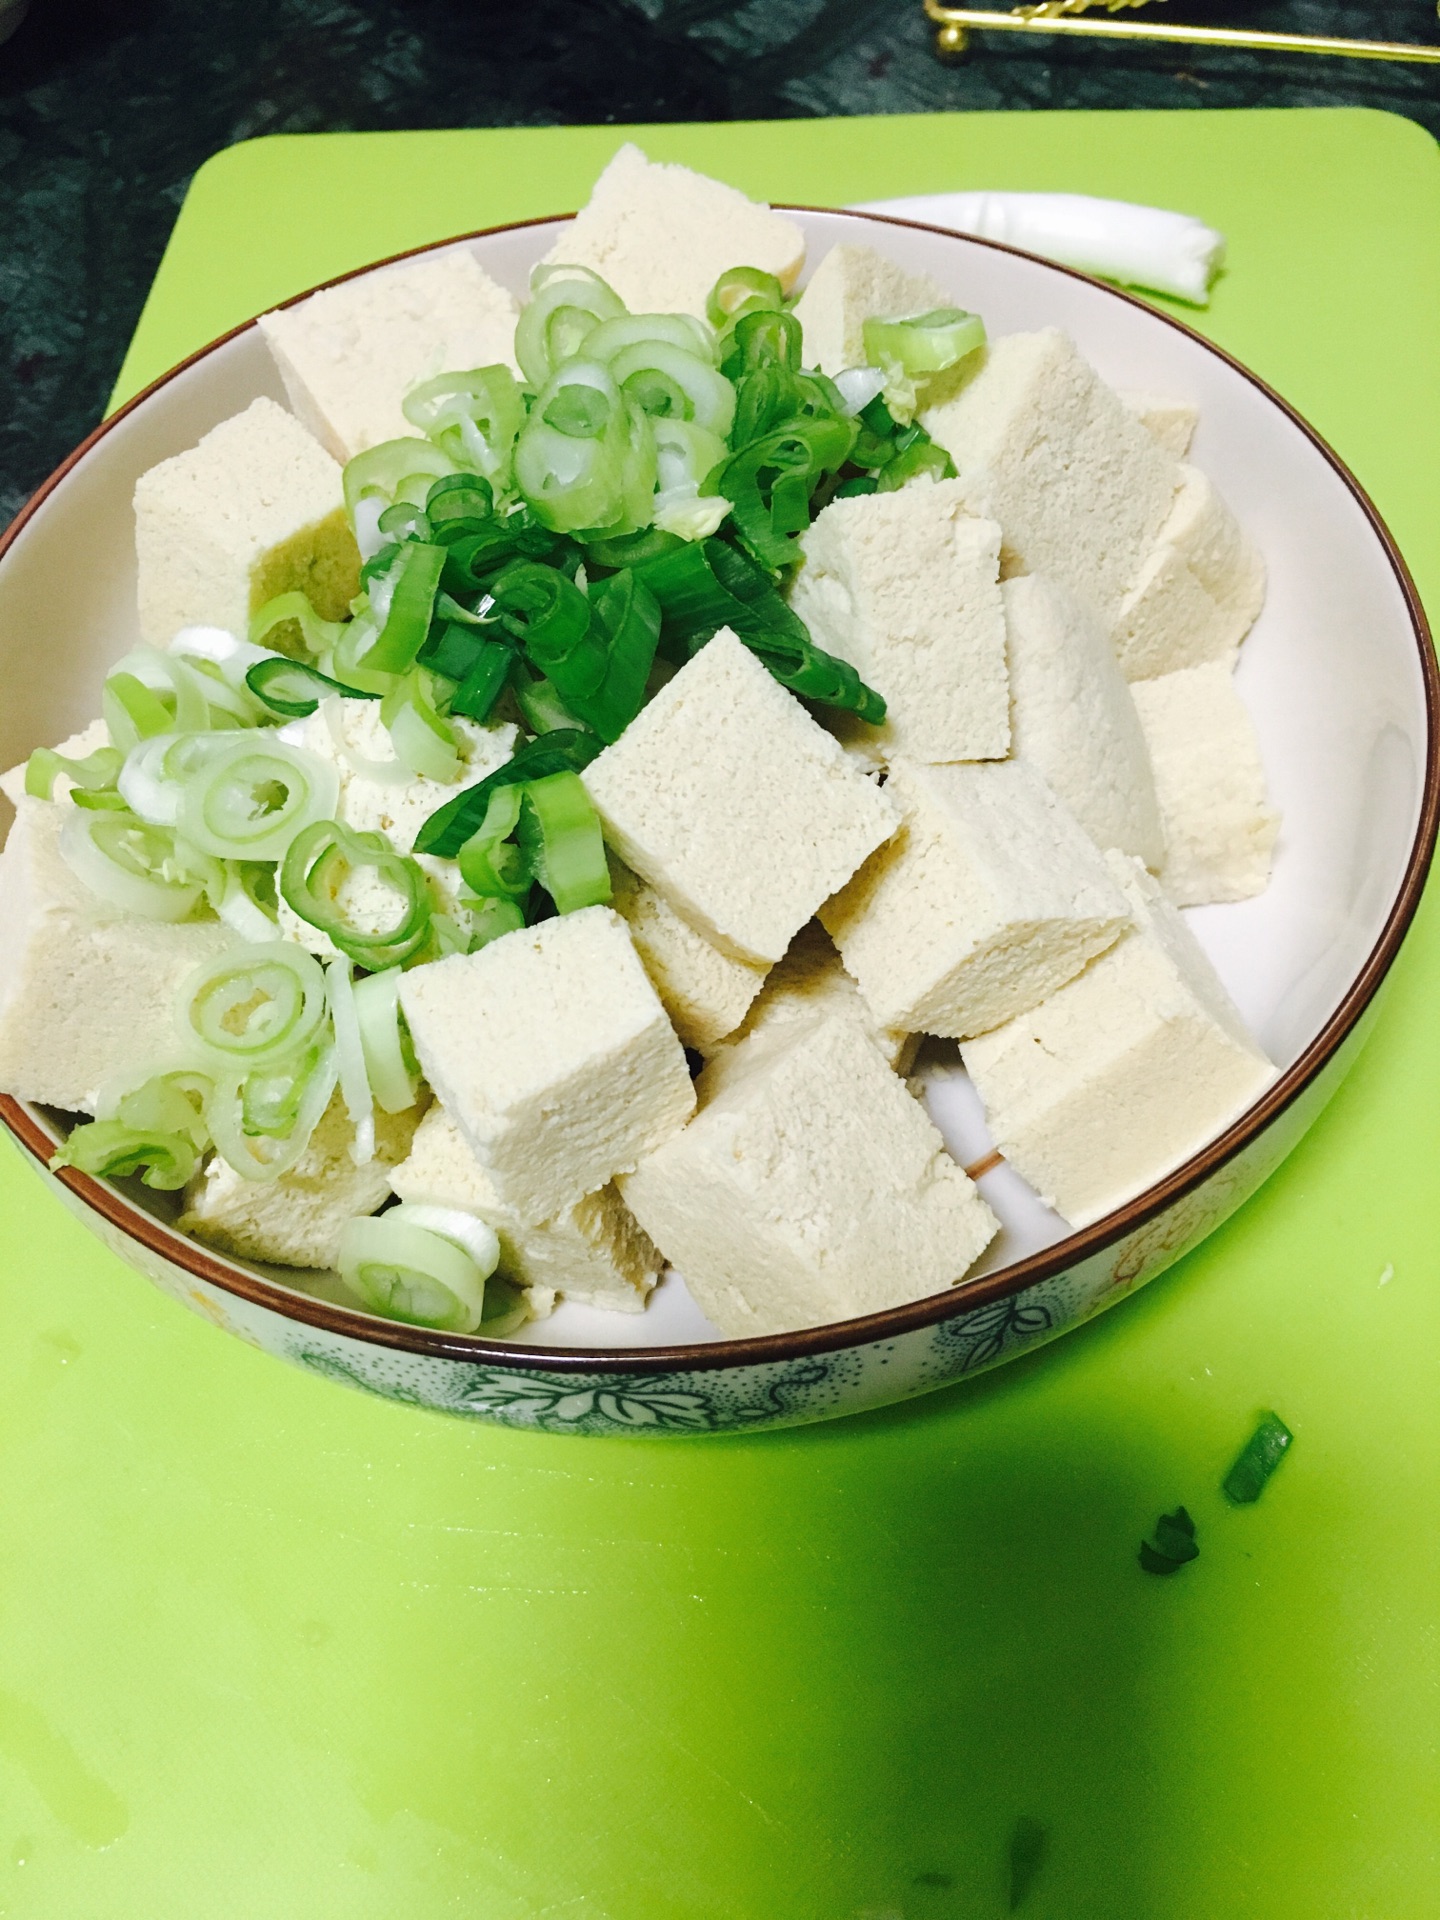 娃娃菜煮豆腐汤怎么做_娃娃菜煮豆腐汤的做法_明都花园_豆果美食